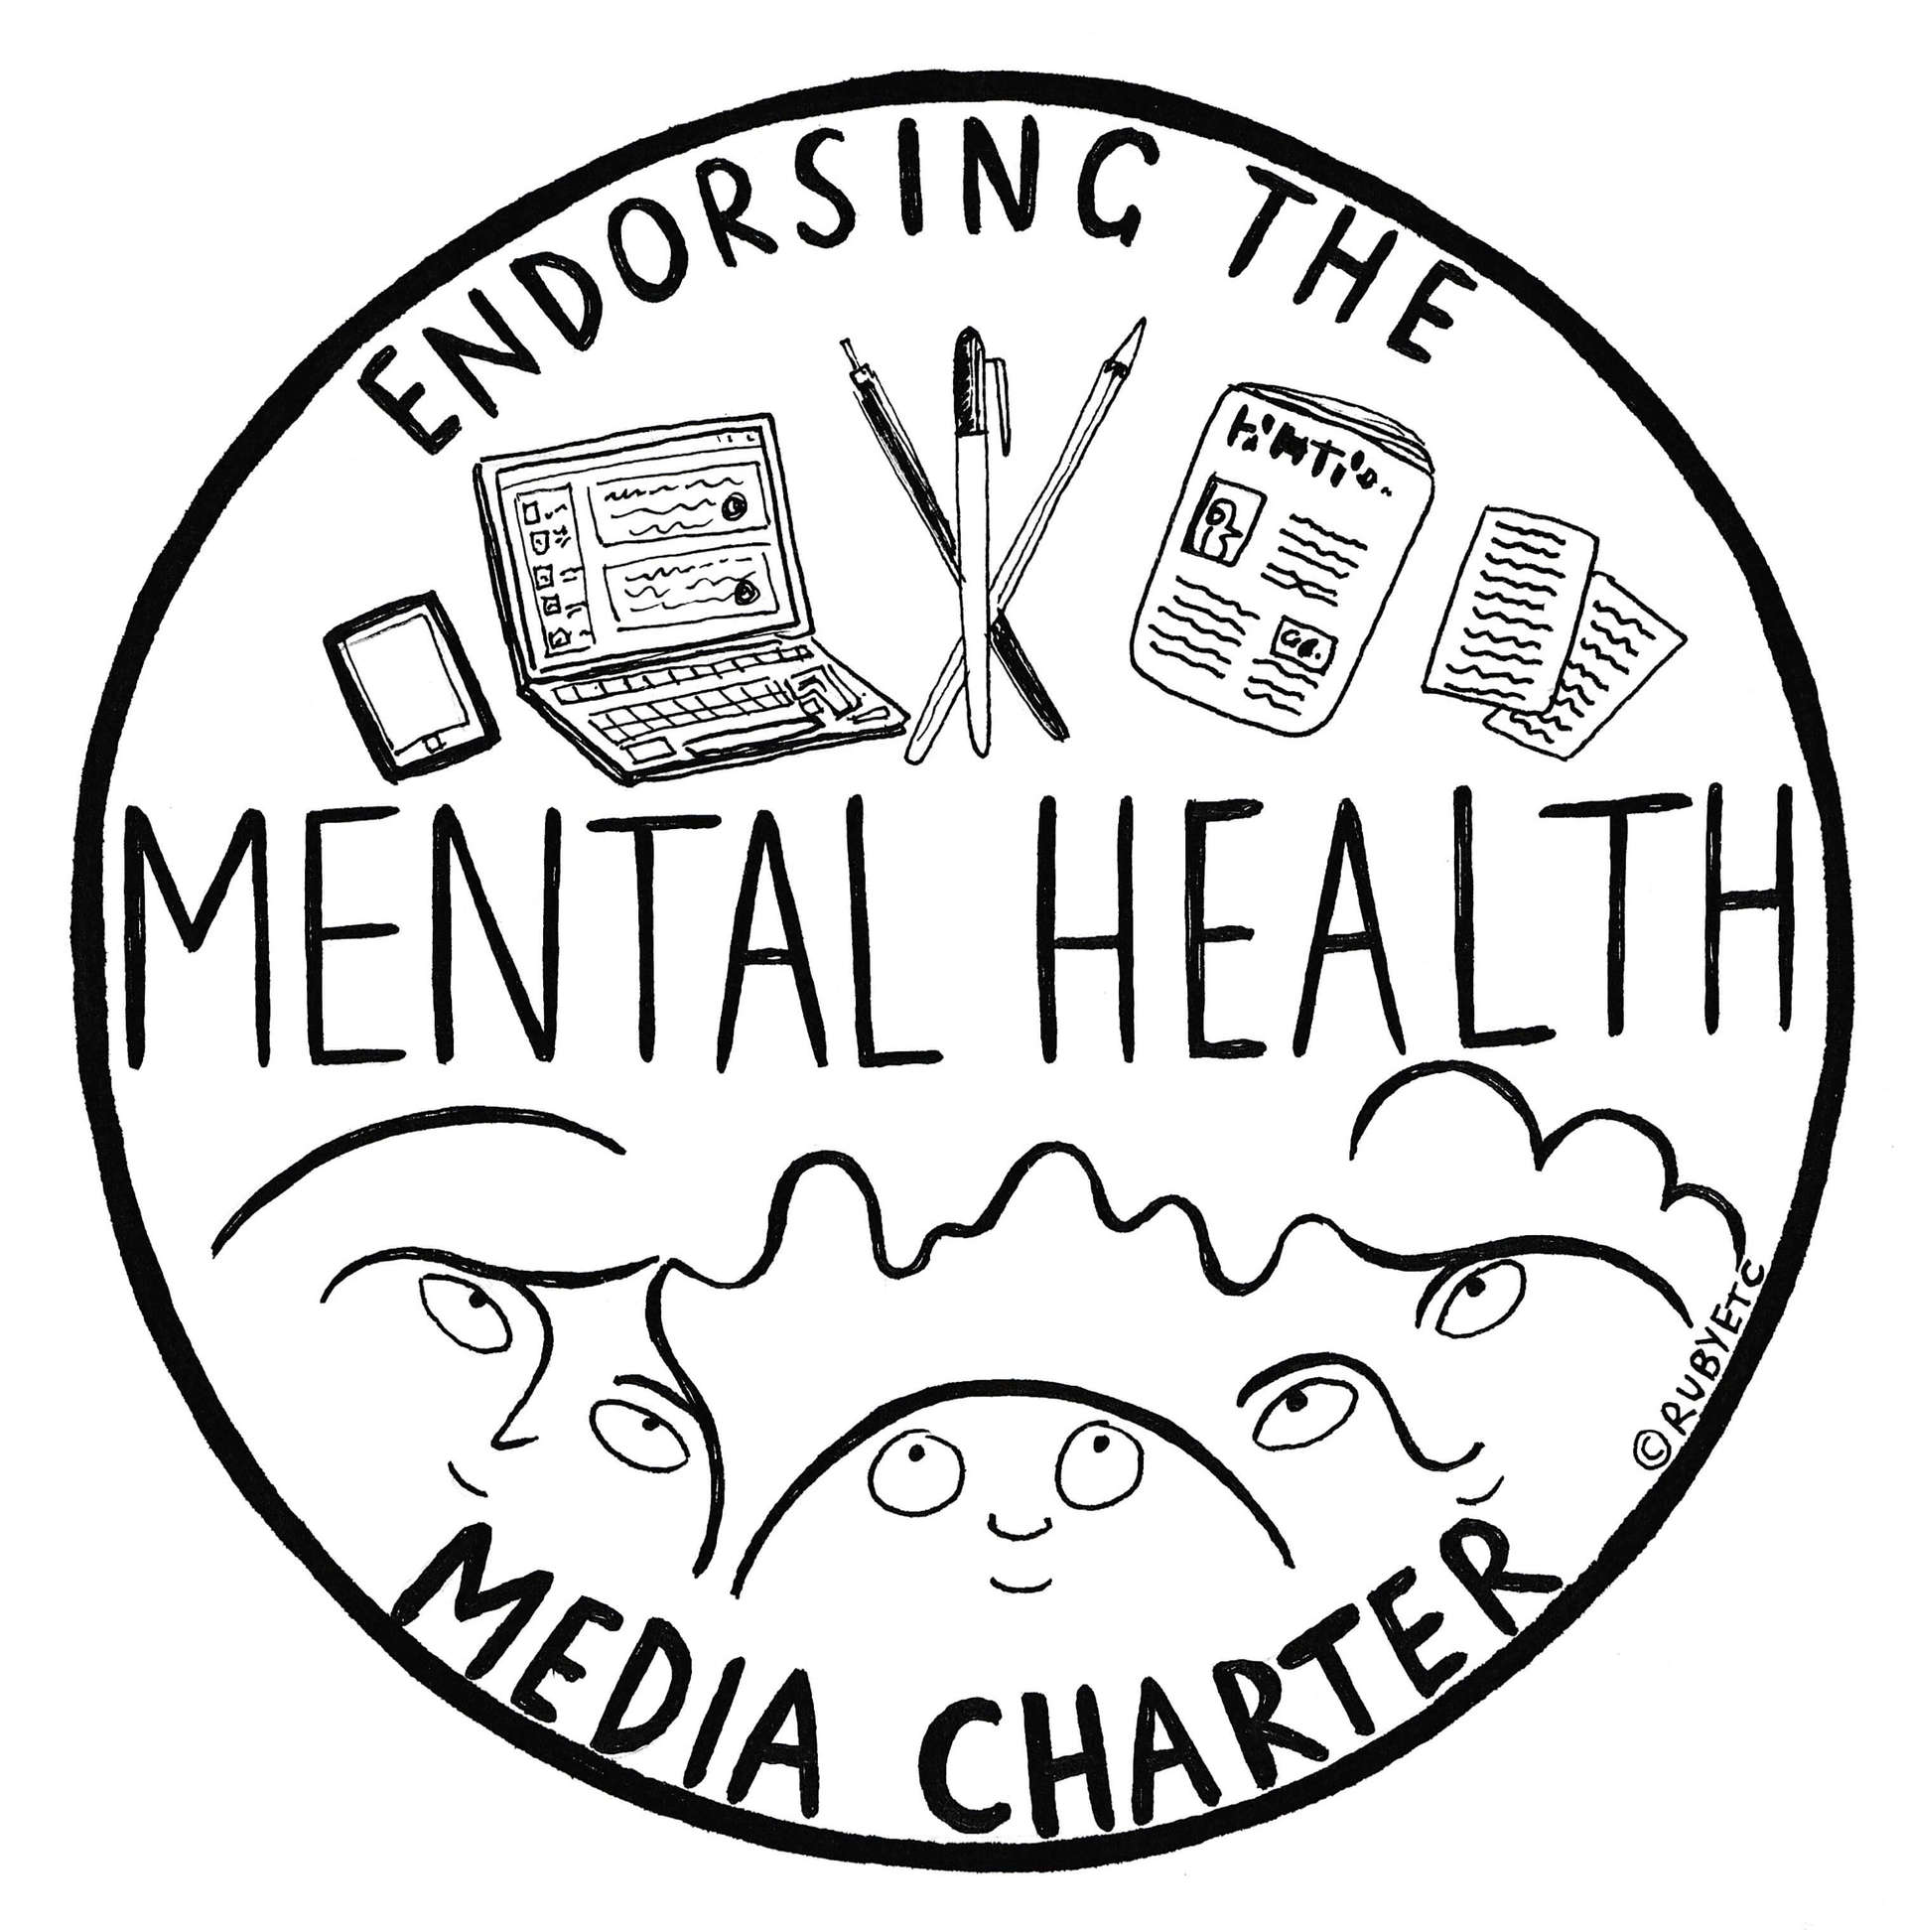 Mental Health  media charter stamp